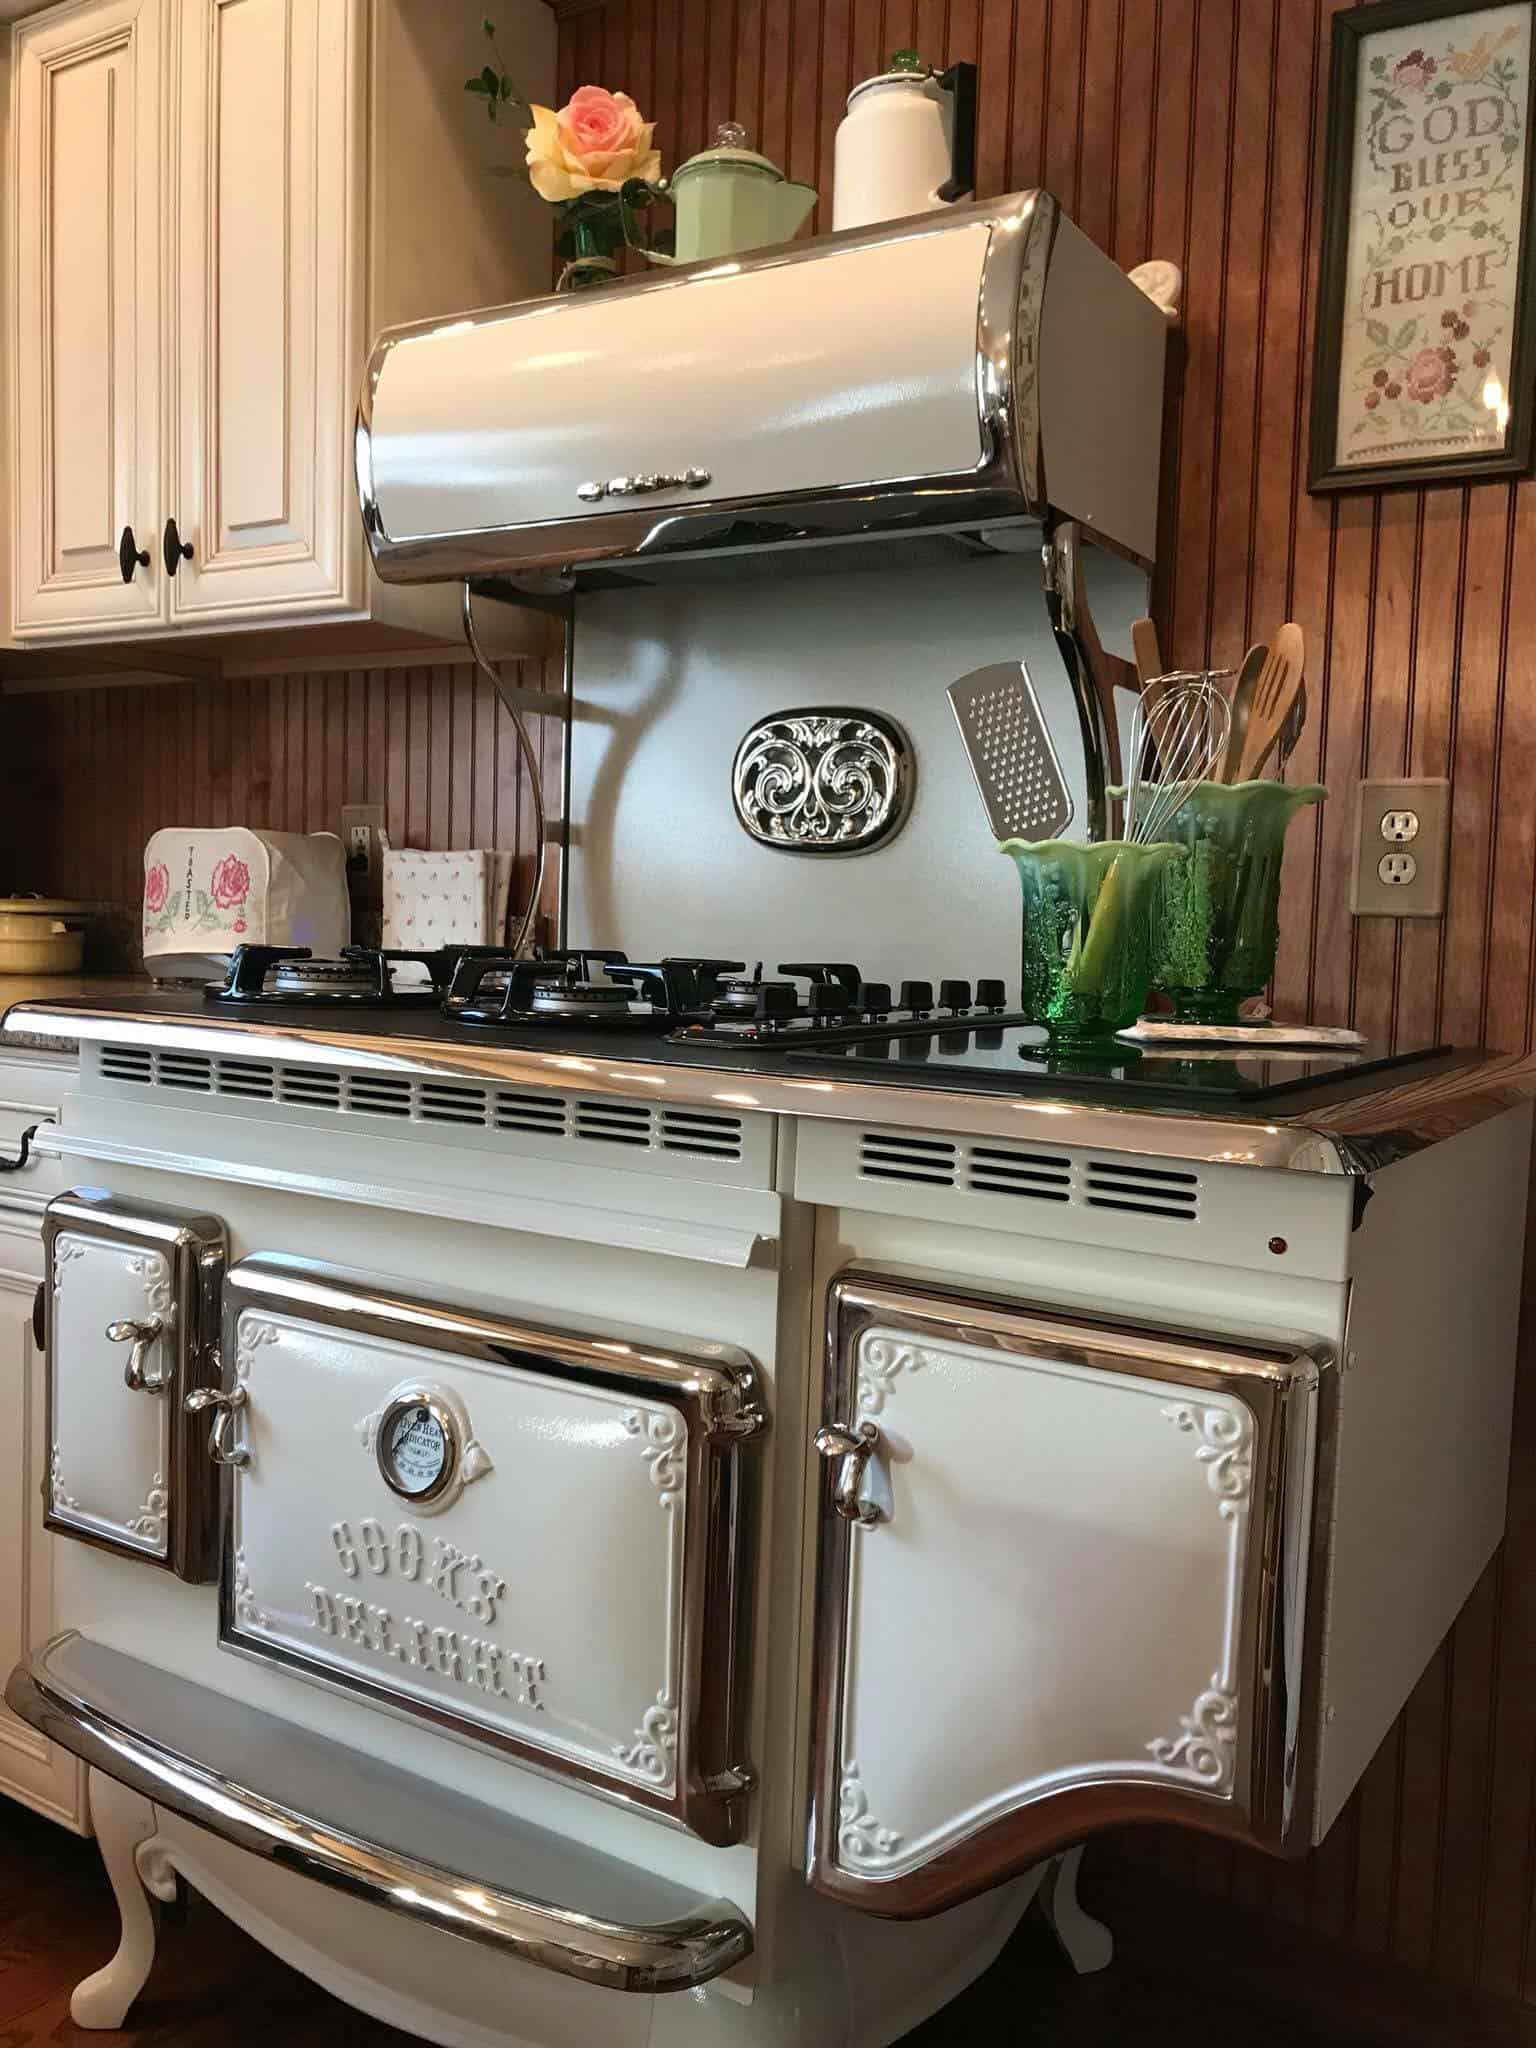 Retro Kitchen Appliances by Elmira Stove Works | Designs & Ideas on Dornob